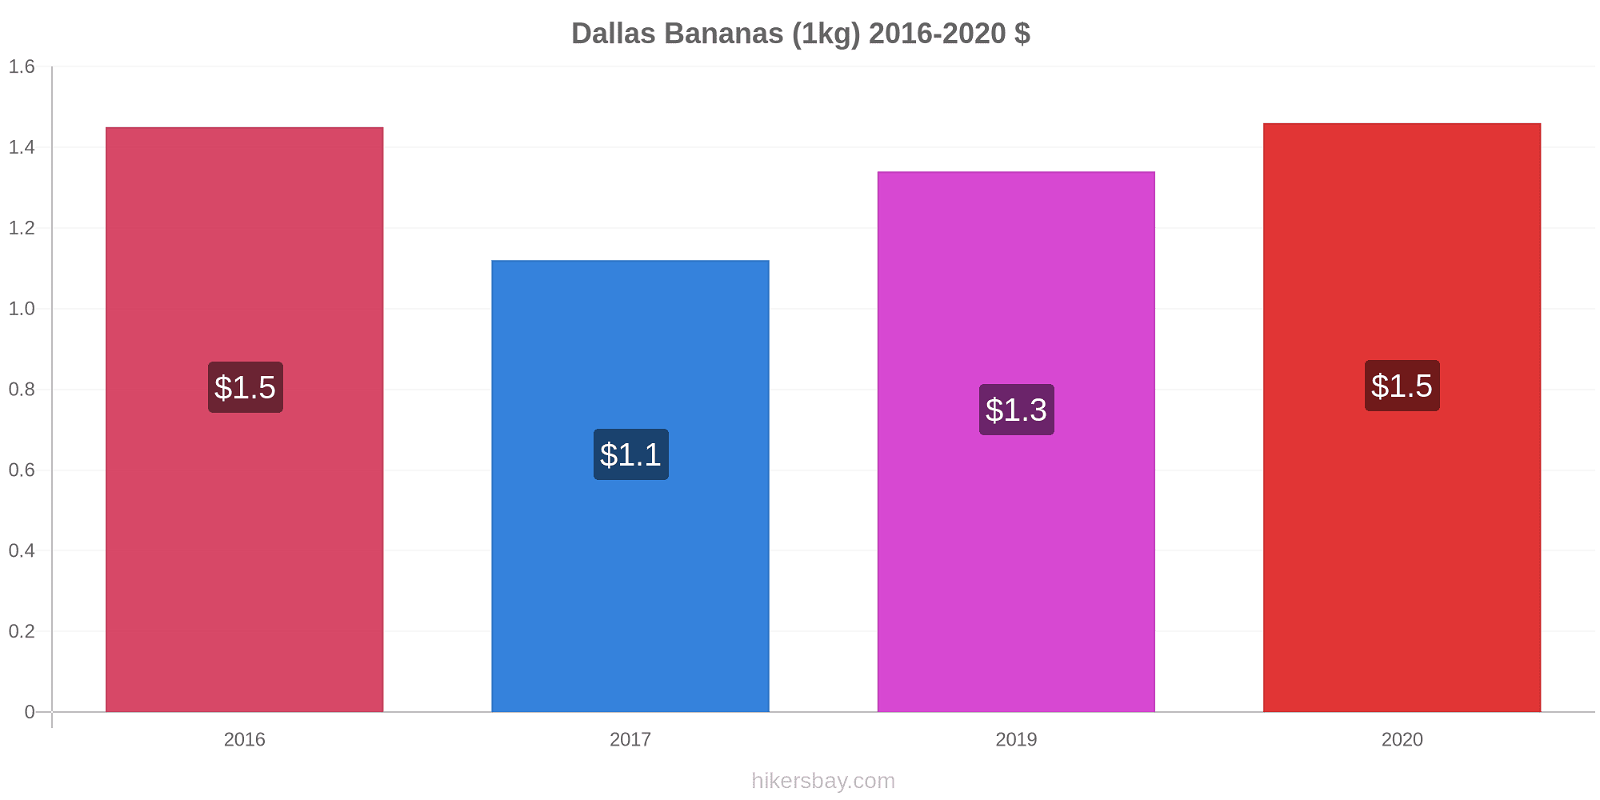 Dallas variação de preço Banana (1kg) hikersbay.com